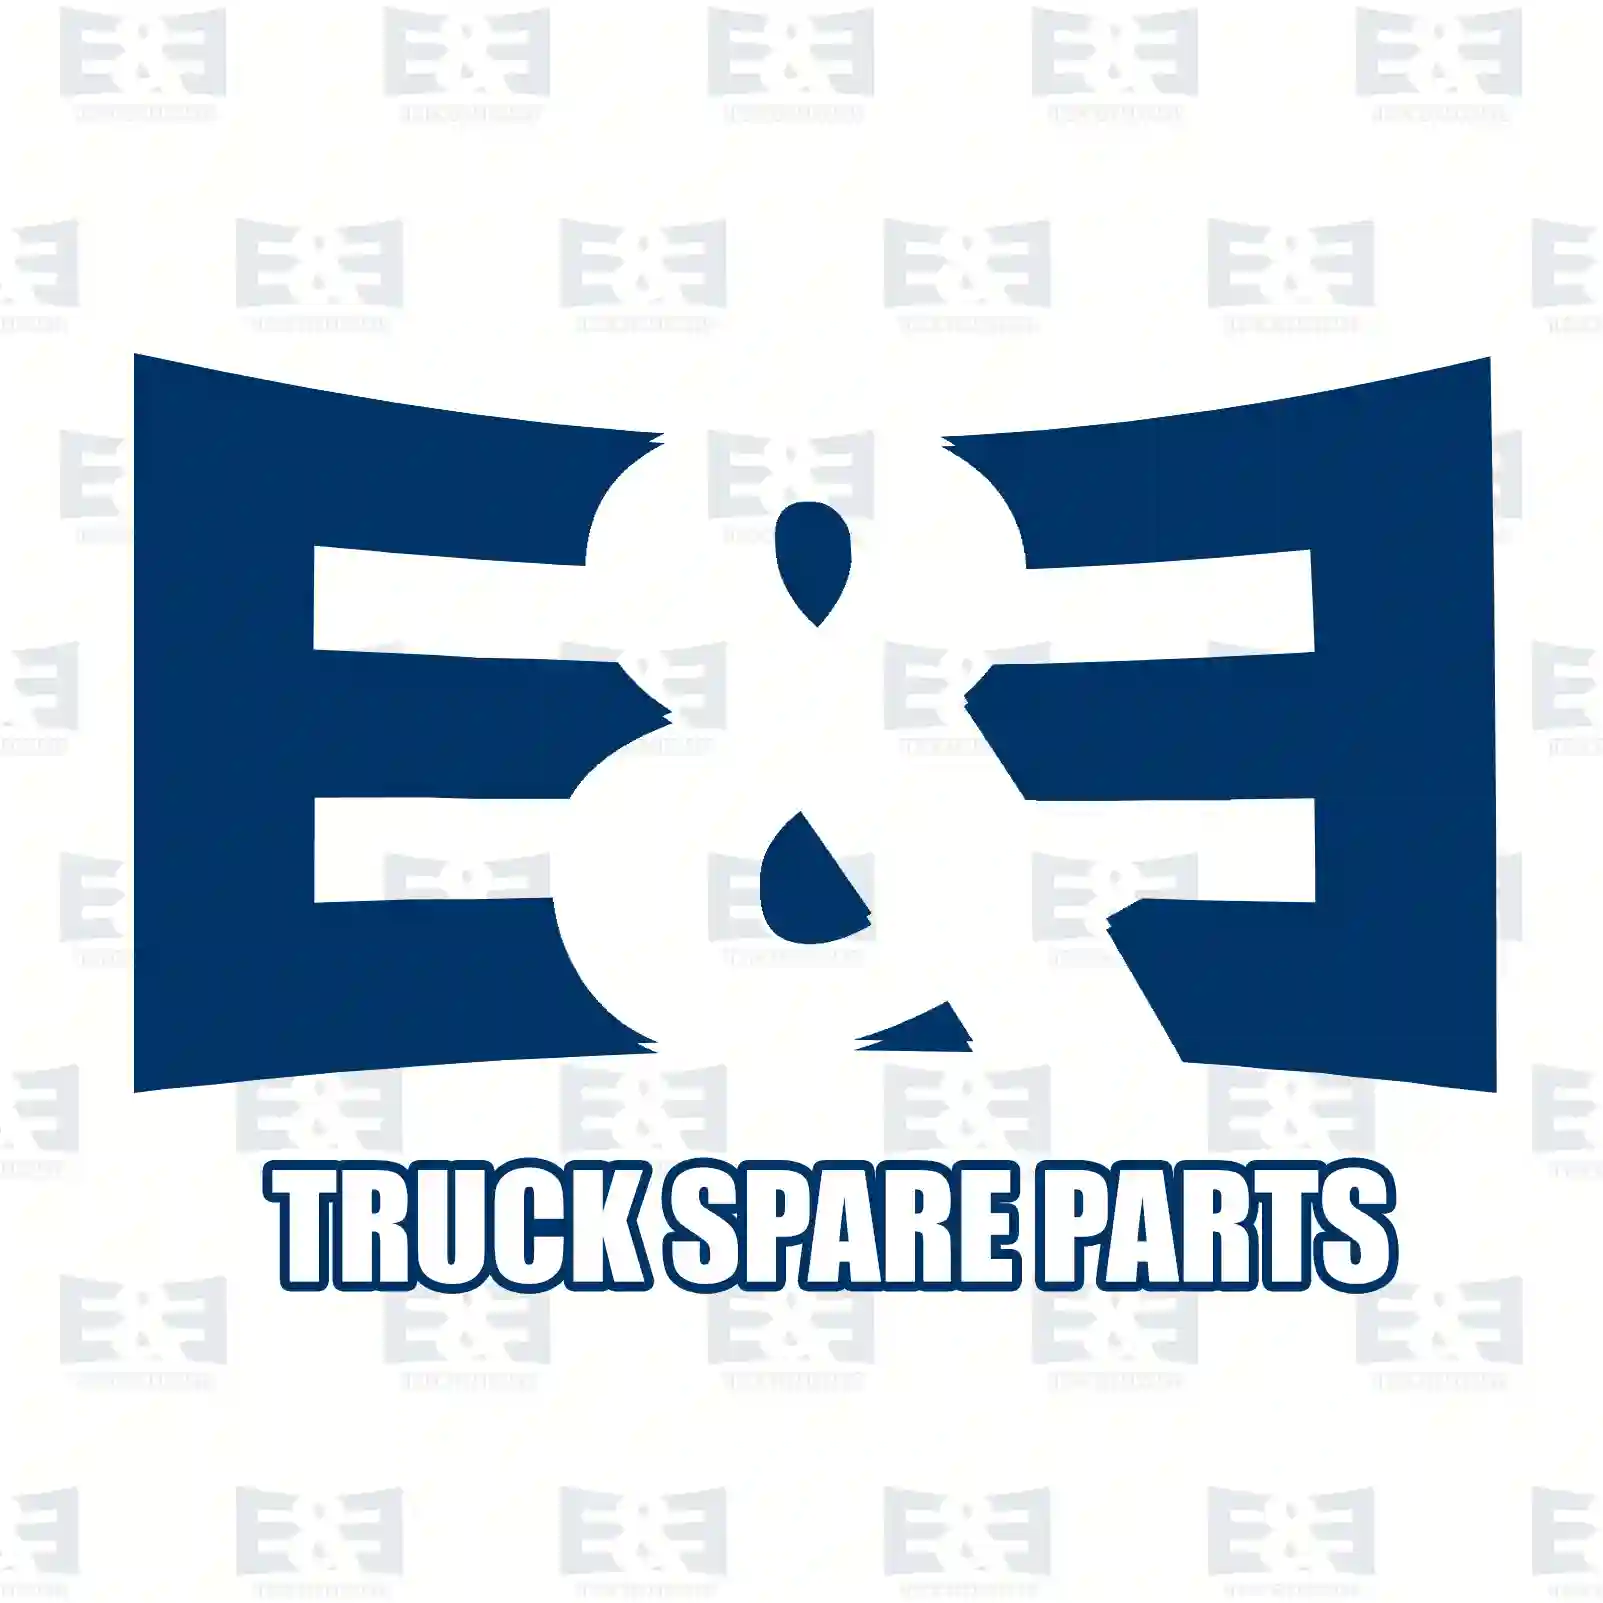 Steering gear, 2E2205056, 1386806, 1494683, 1502621, 1510884, 1566551, 1672070, 1744919, 1795023, 6C11-3200-DD, 6C11-3200-DE, 8C11-3200-DB, 8C11-3200-DC, 8C11-3200-DD, 8C11-3200-DE, 8C11-3200-DF ||  2E2205056 E&E Truck Spare Parts | Truck Spare Parts, Auotomotive Spare Parts Steering gear, 2E2205056, 1386806, 1494683, 1502621, 1510884, 1566551, 1672070, 1744919, 1795023, 6C11-3200-DD, 6C11-3200-DE, 8C11-3200-DB, 8C11-3200-DC, 8C11-3200-DD, 8C11-3200-DE, 8C11-3200-DF ||  2E2205056 E&E Truck Spare Parts | Truck Spare Parts, Auotomotive Spare Parts